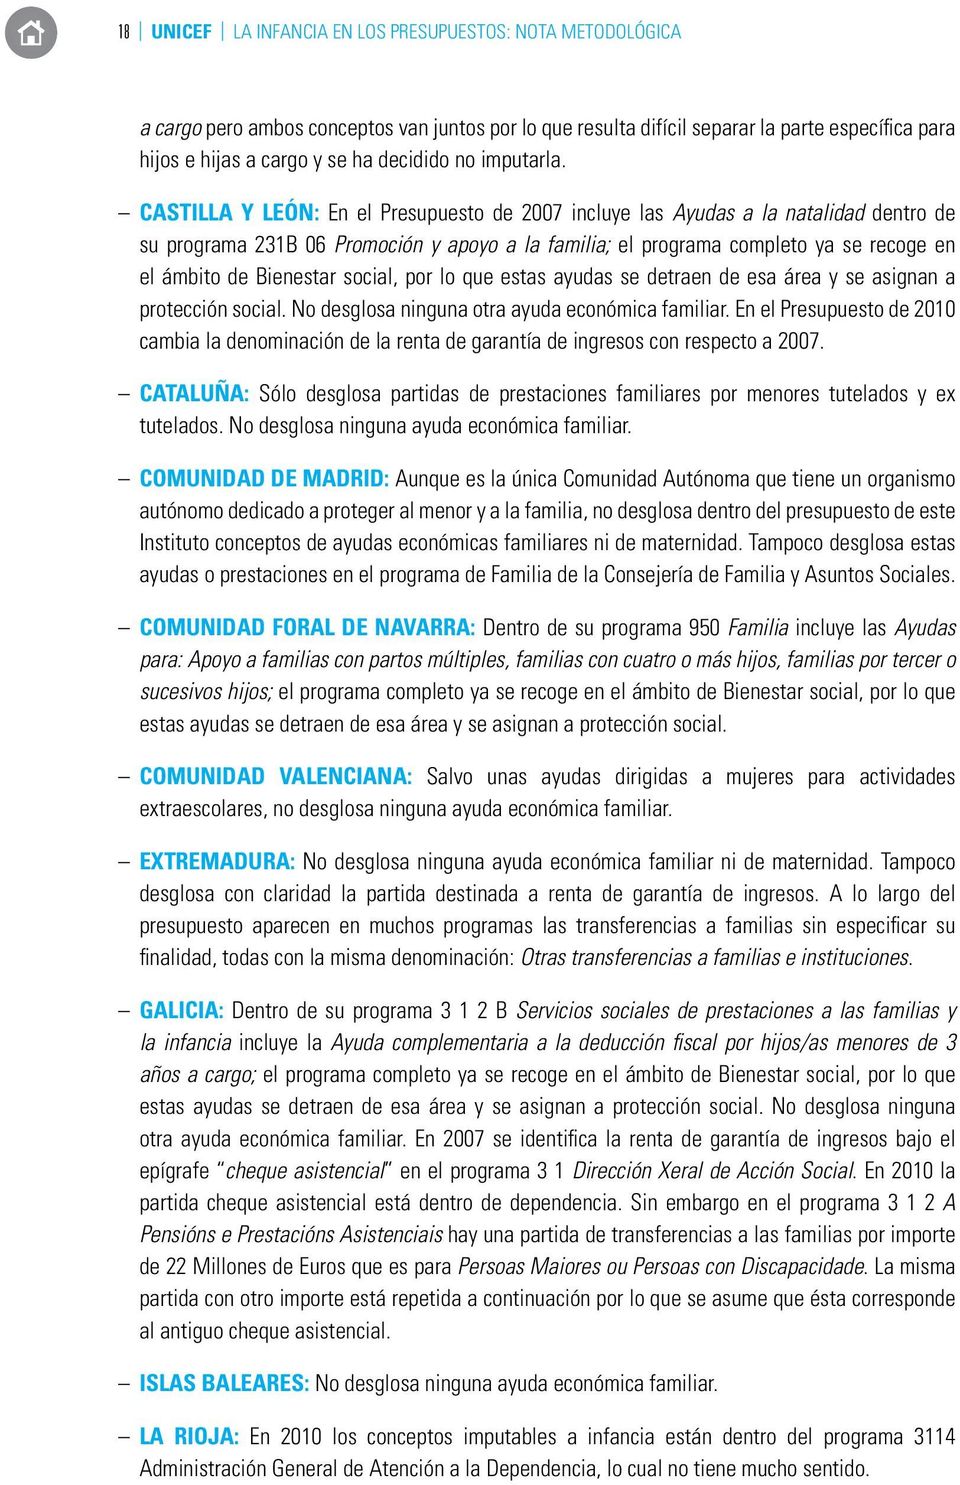 Castilla y León: En el Presupuesto de 2007 incluye las Ayudas a la natalidad dentro de su programa 231B 06 Promoción y apoyo a la familia; el programa completo ya se recoge en el ámbito de Bienestar